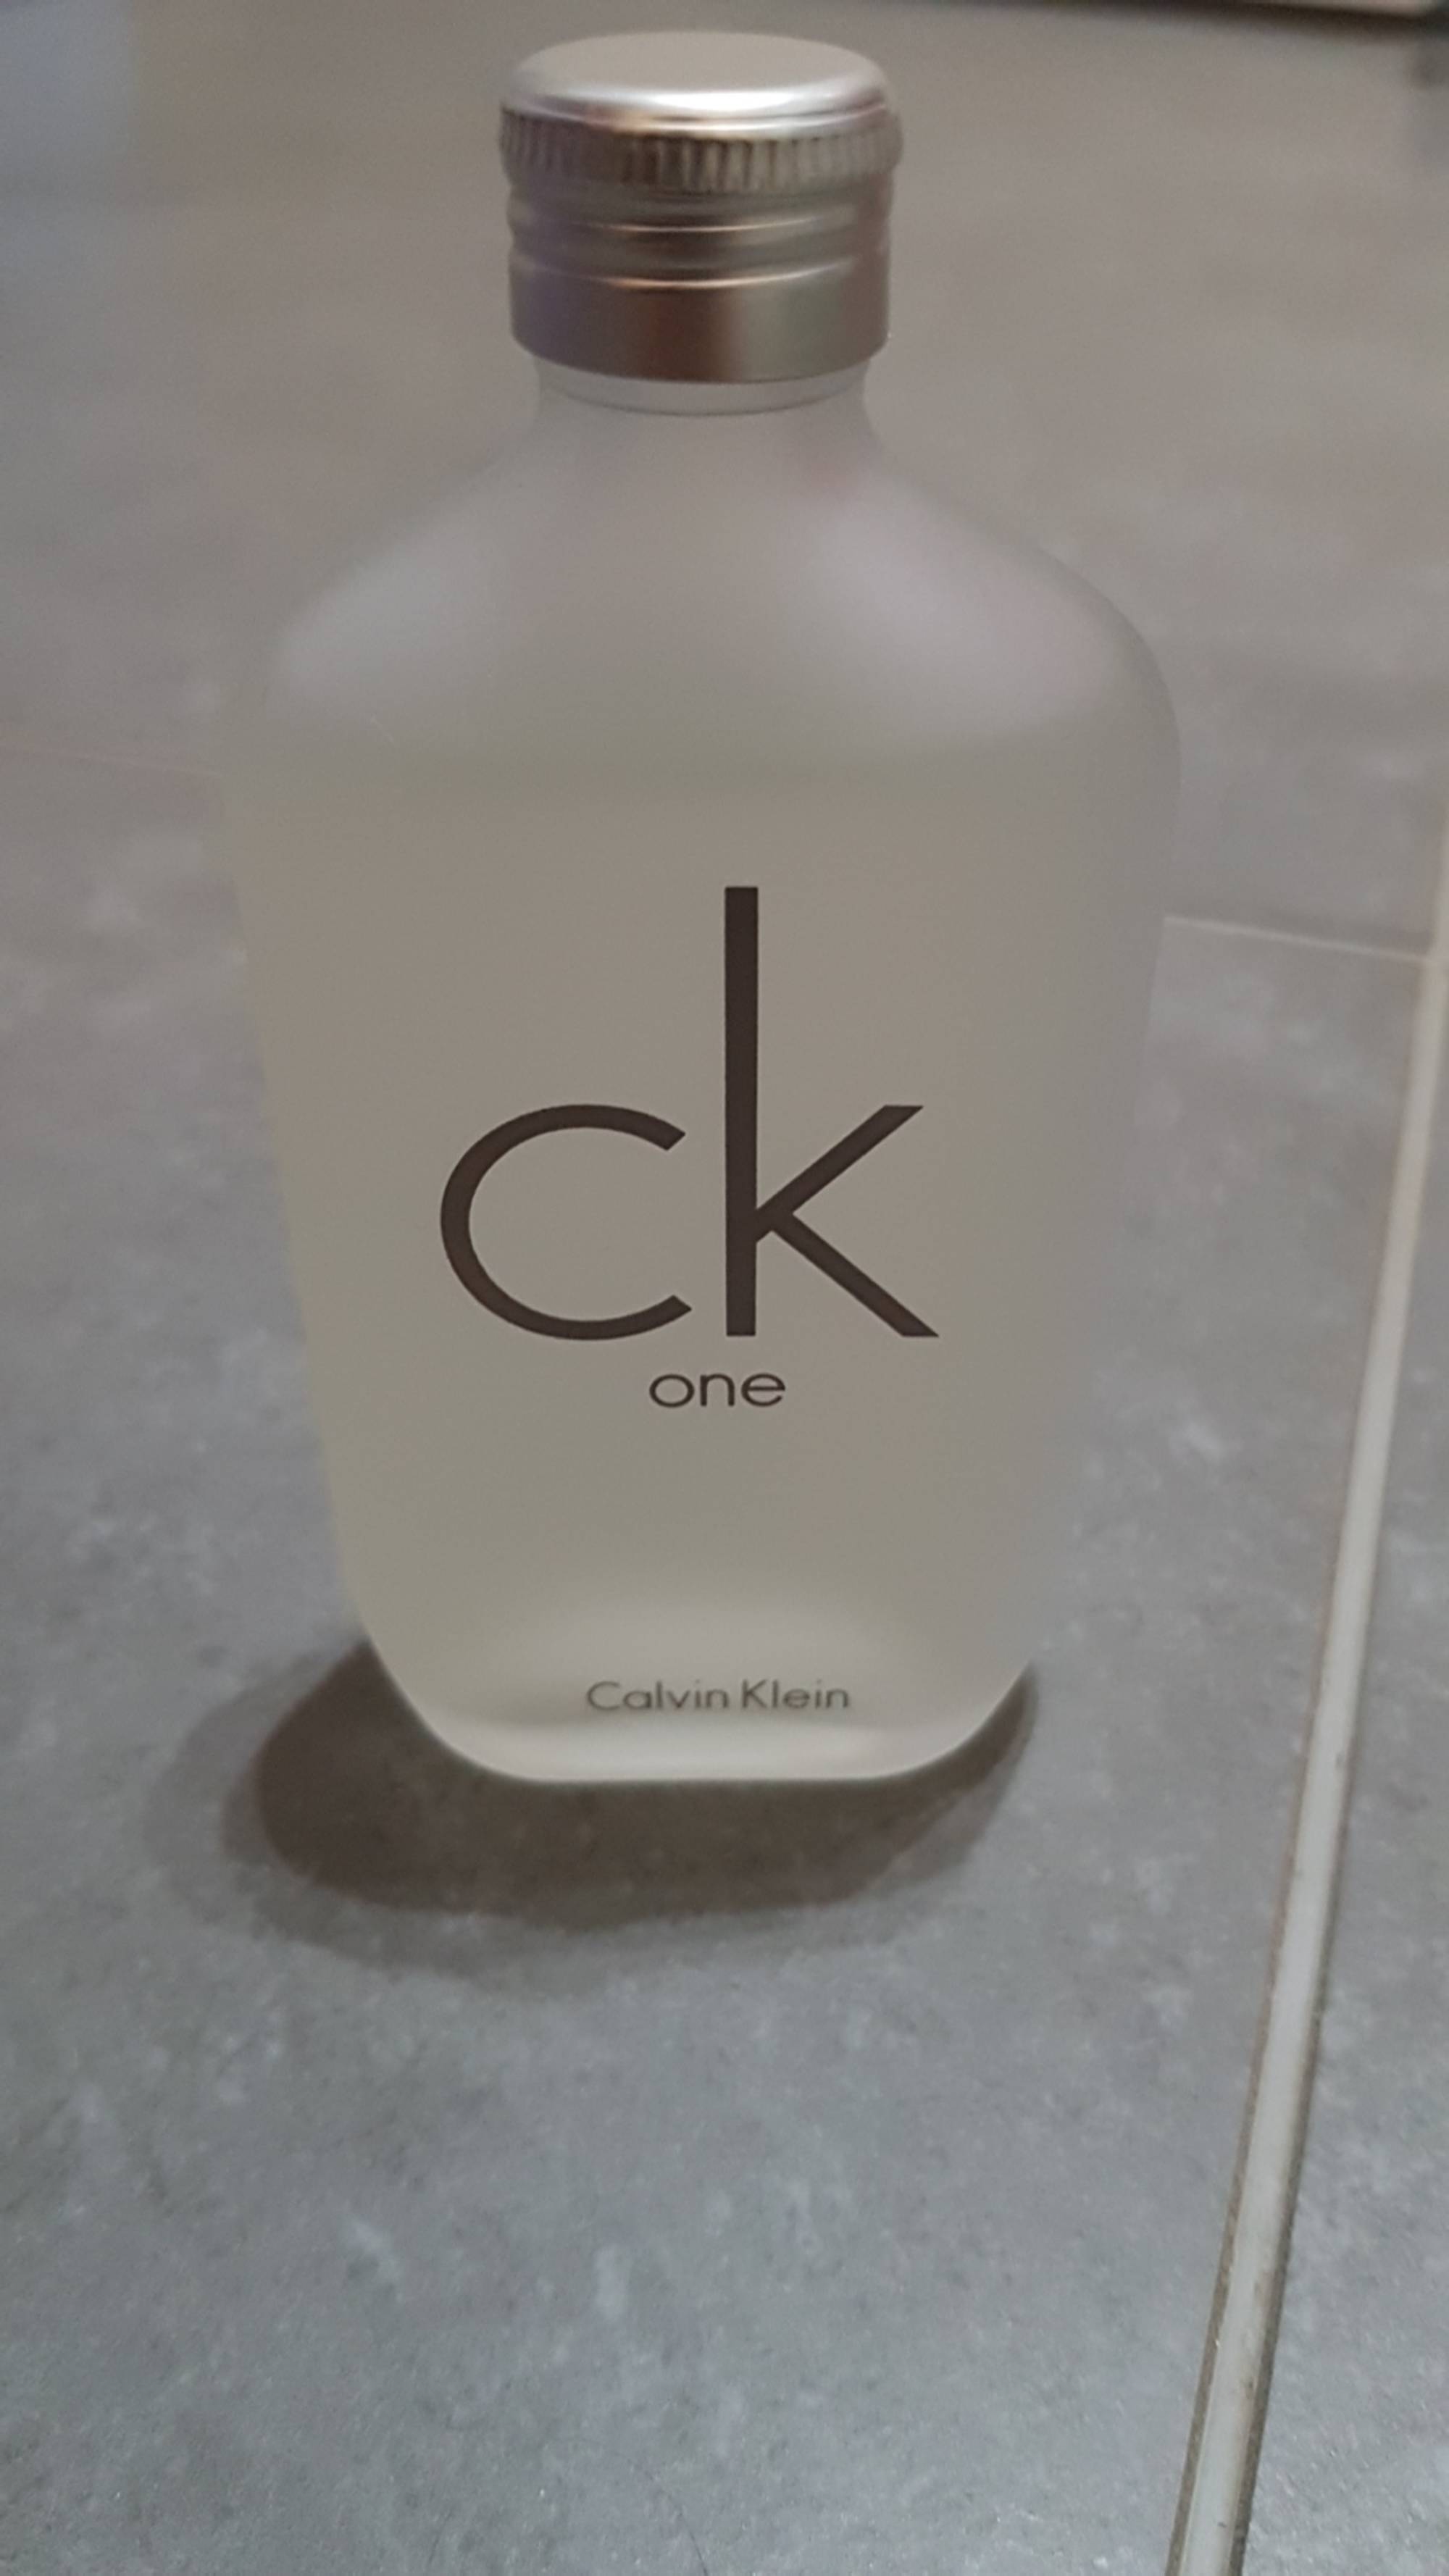 CALVIN KLEIN - Ck One - Eau de toilette